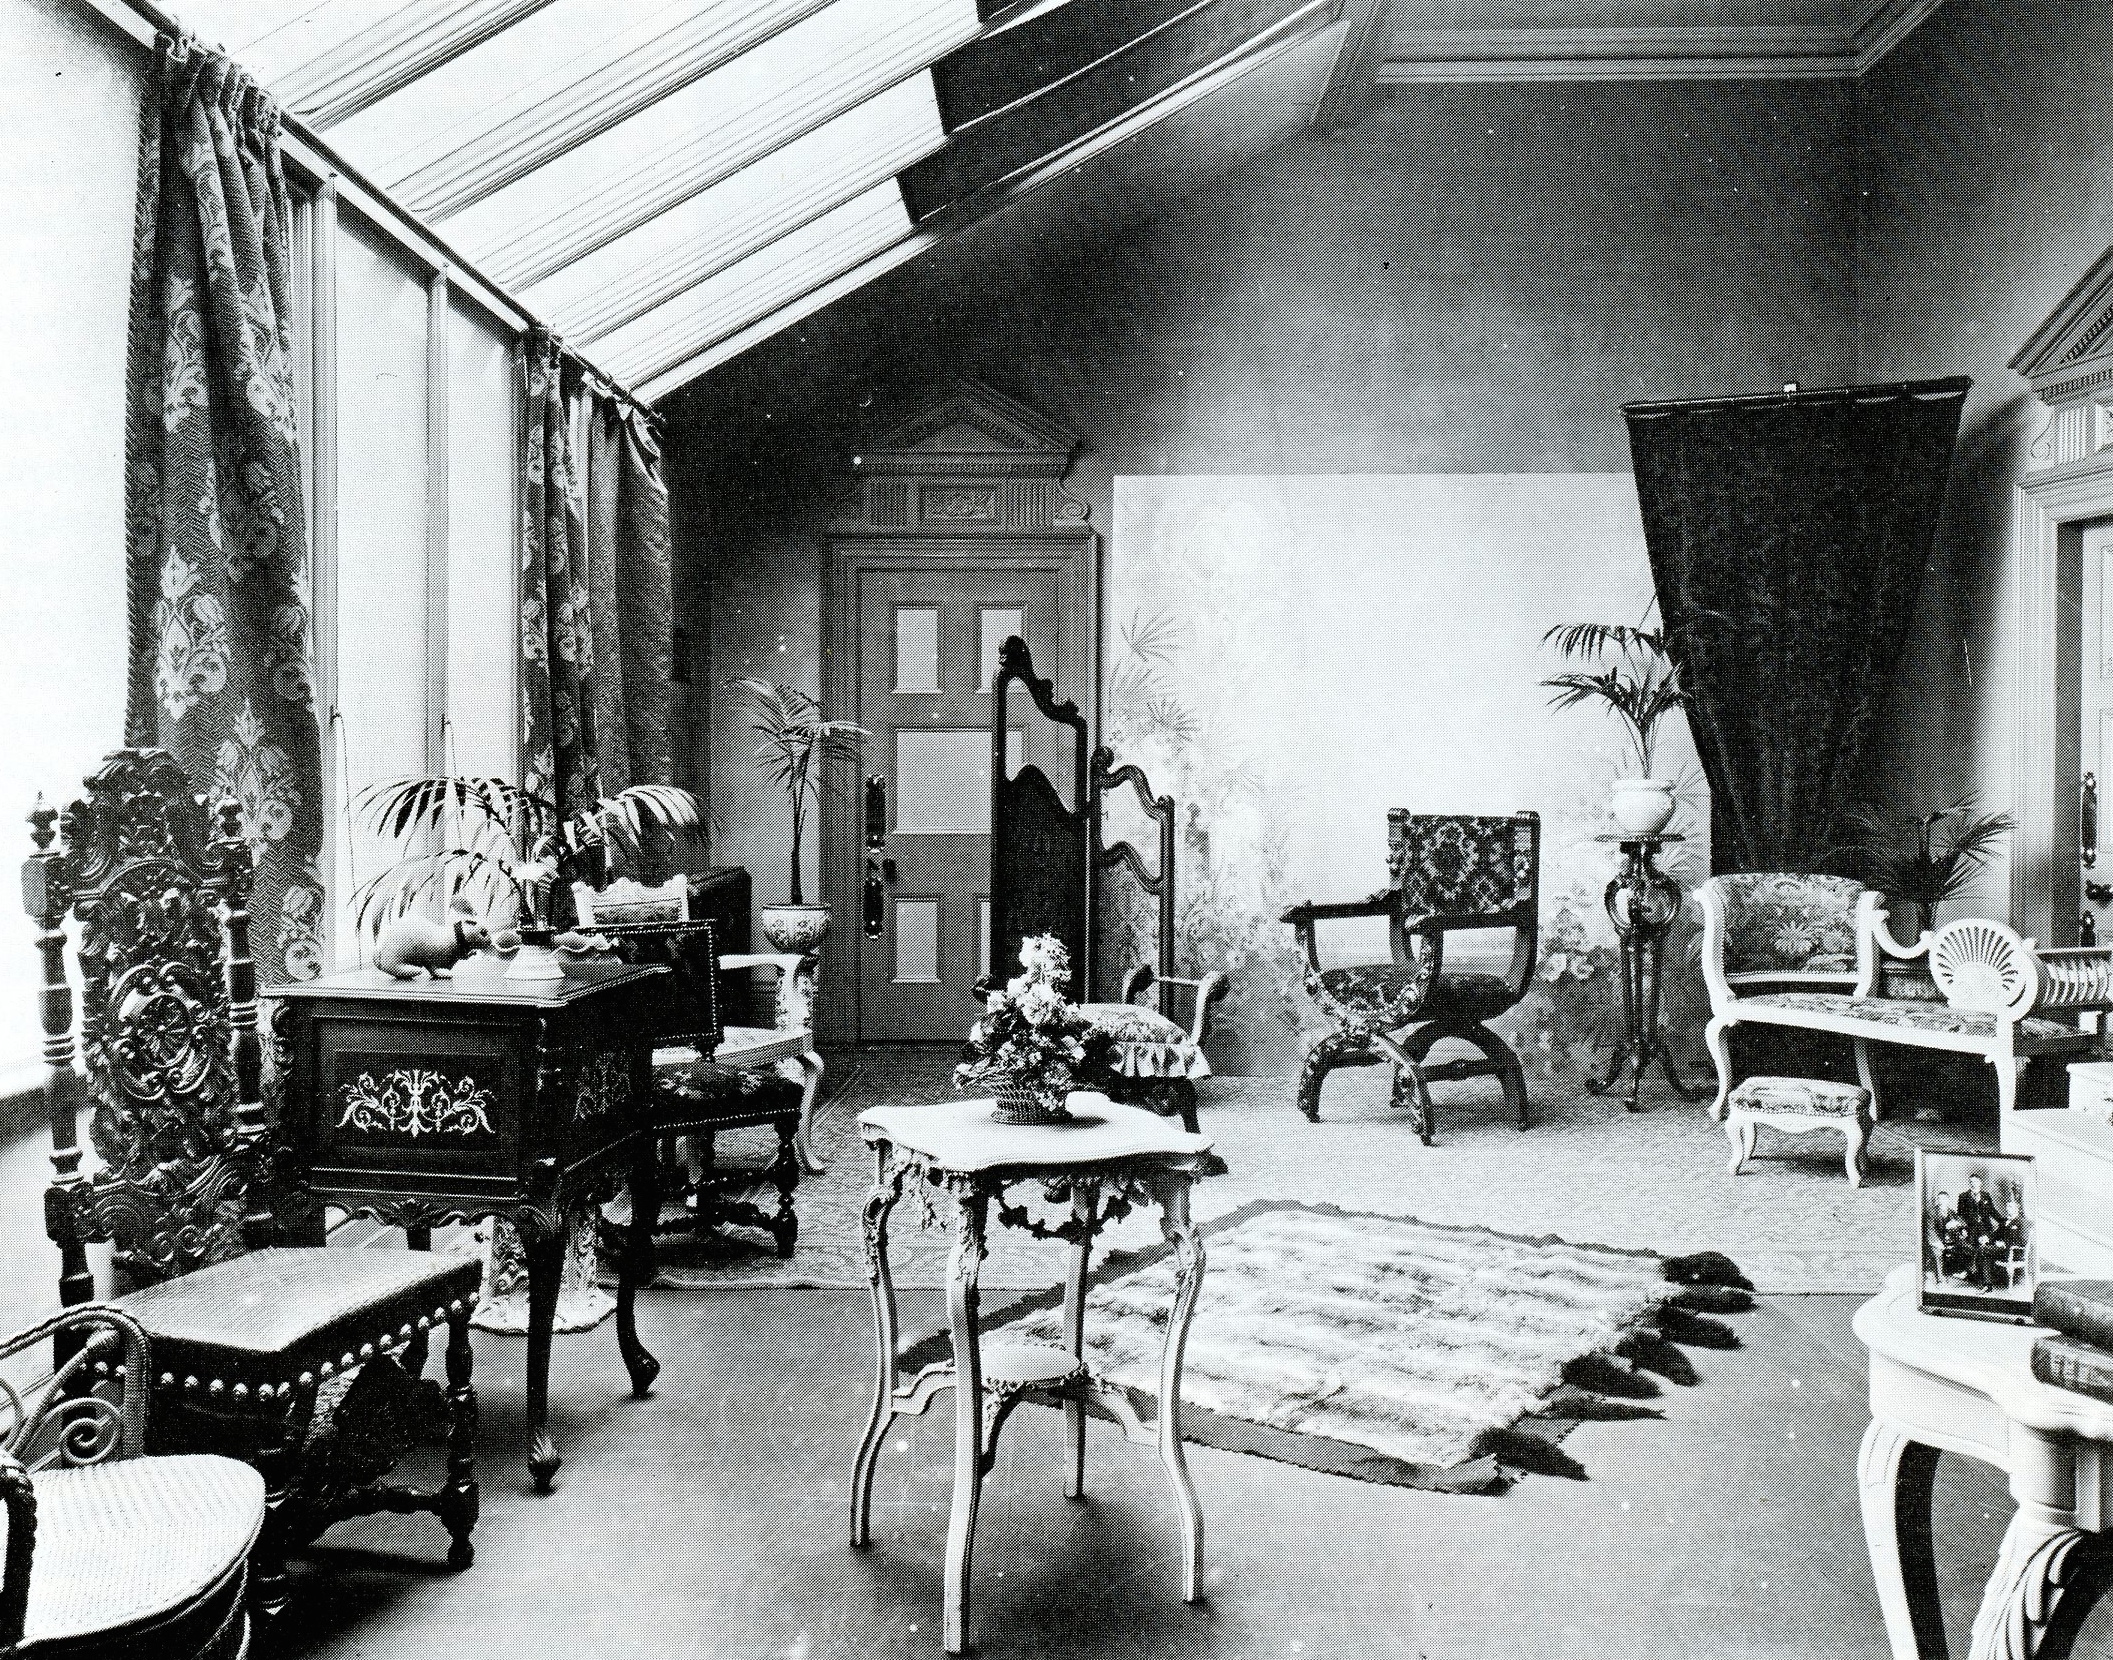 photographer's studio, 1850